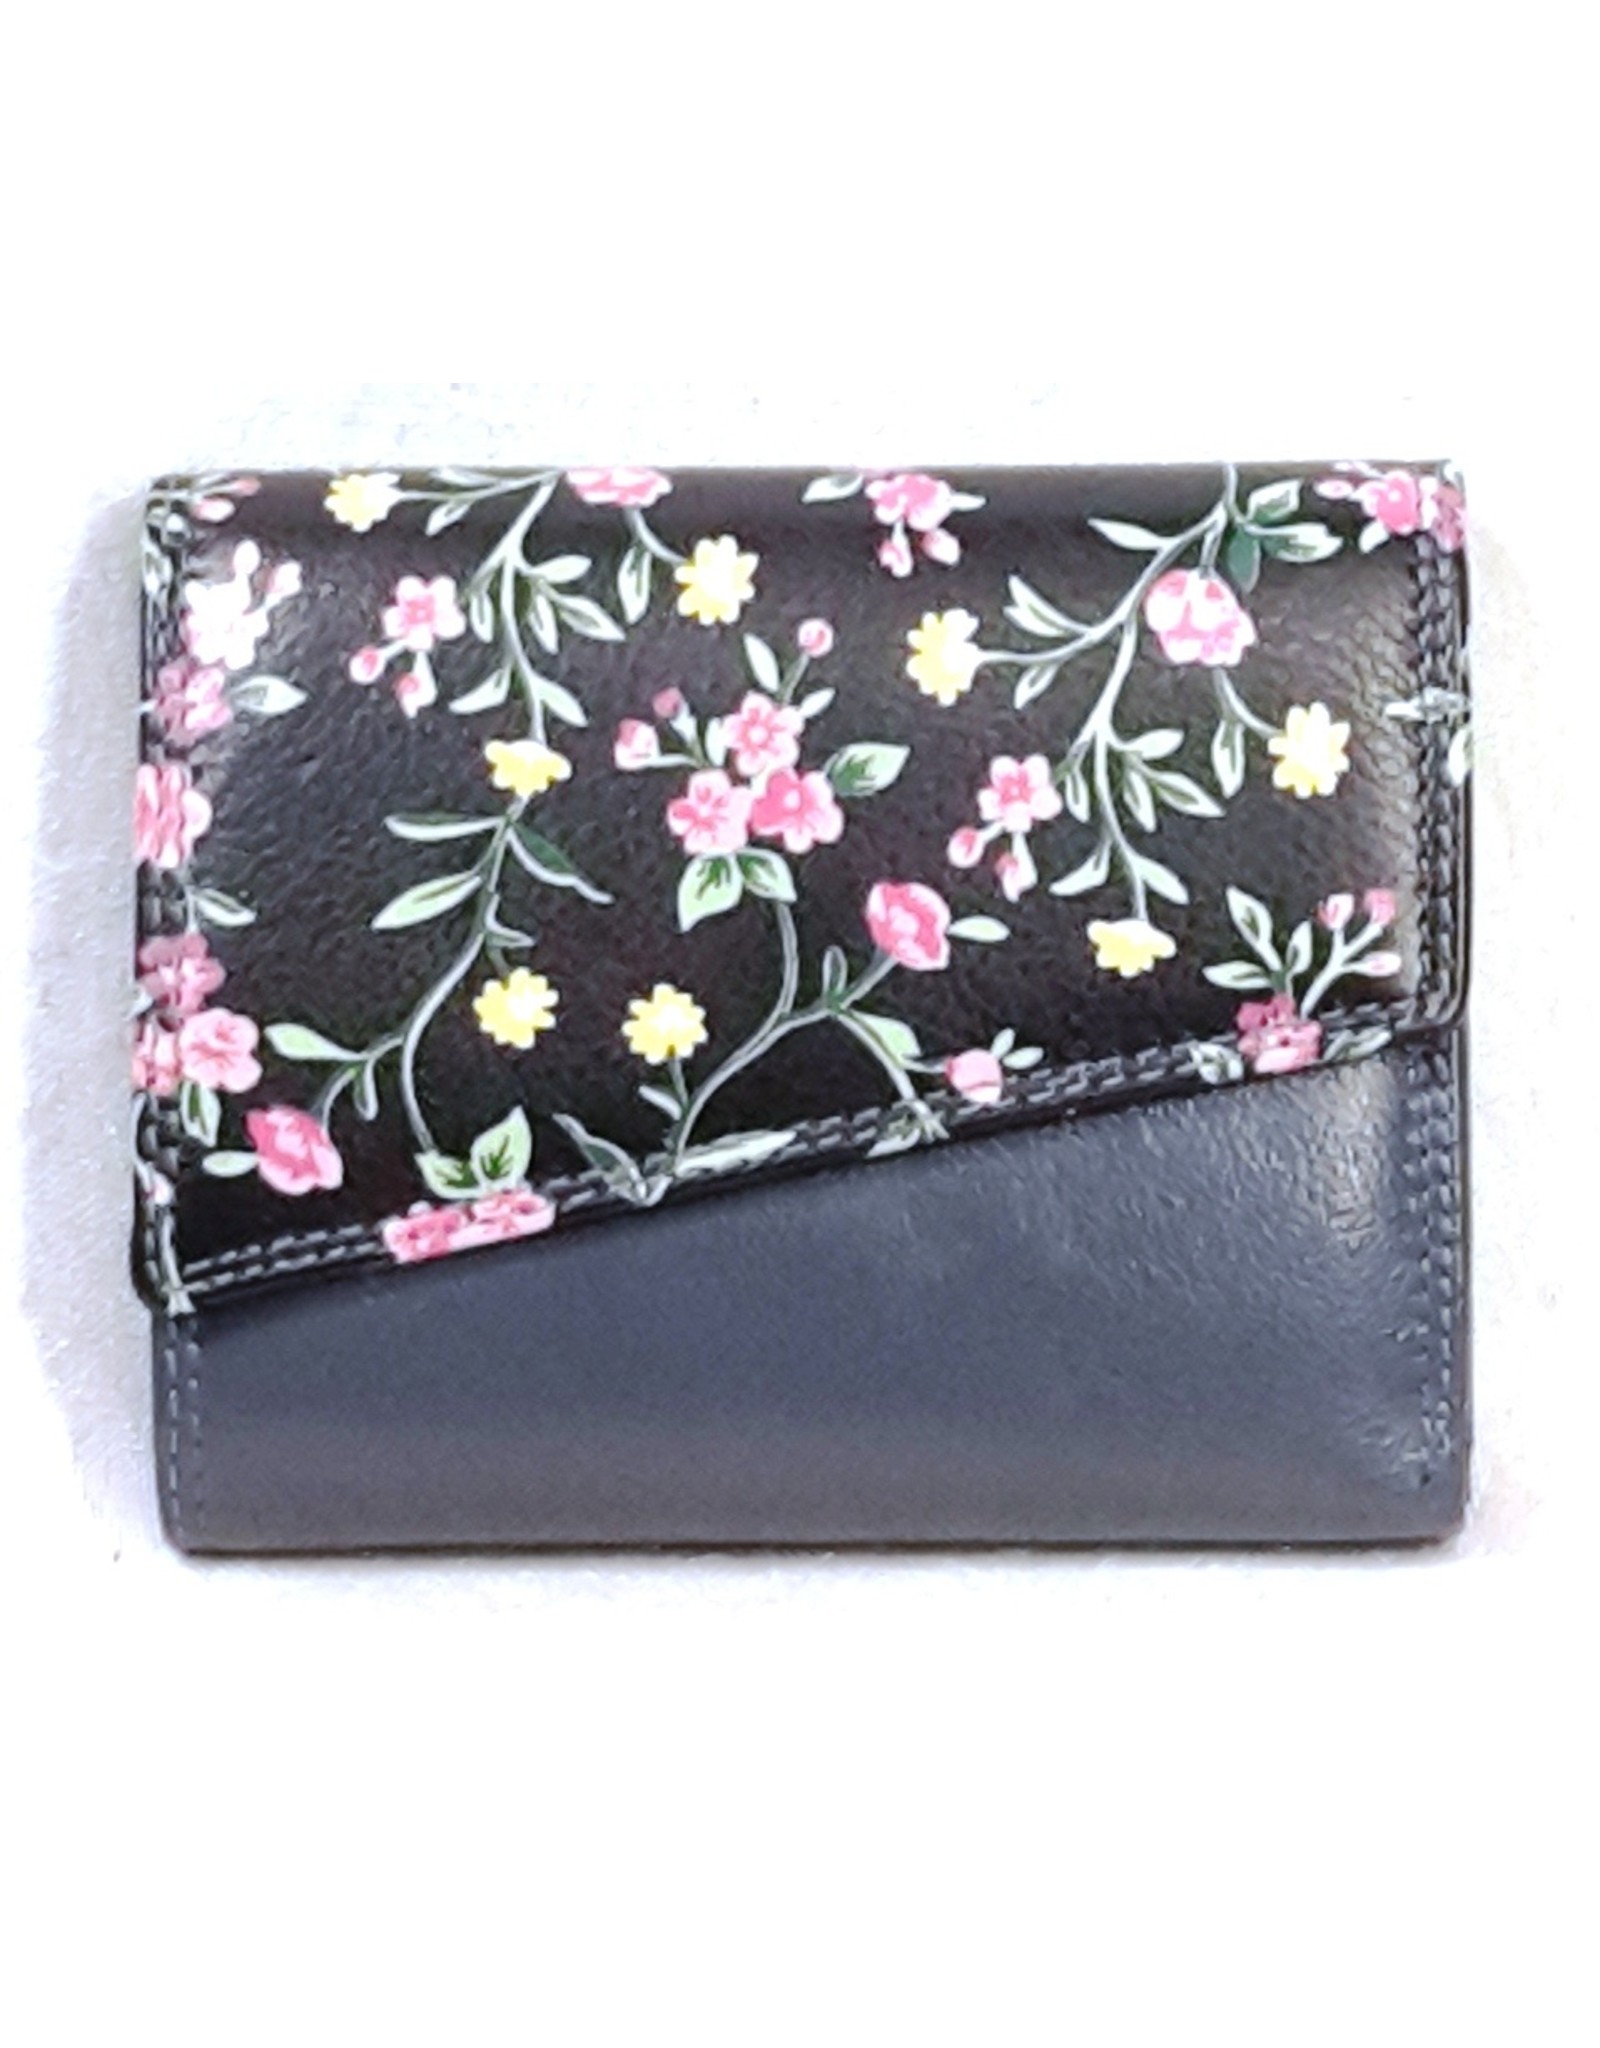 Louis Wallis Leren Portemonnees - Leren portemonnee met bloemenprint op de omslag ( donkerblauw-zwart)